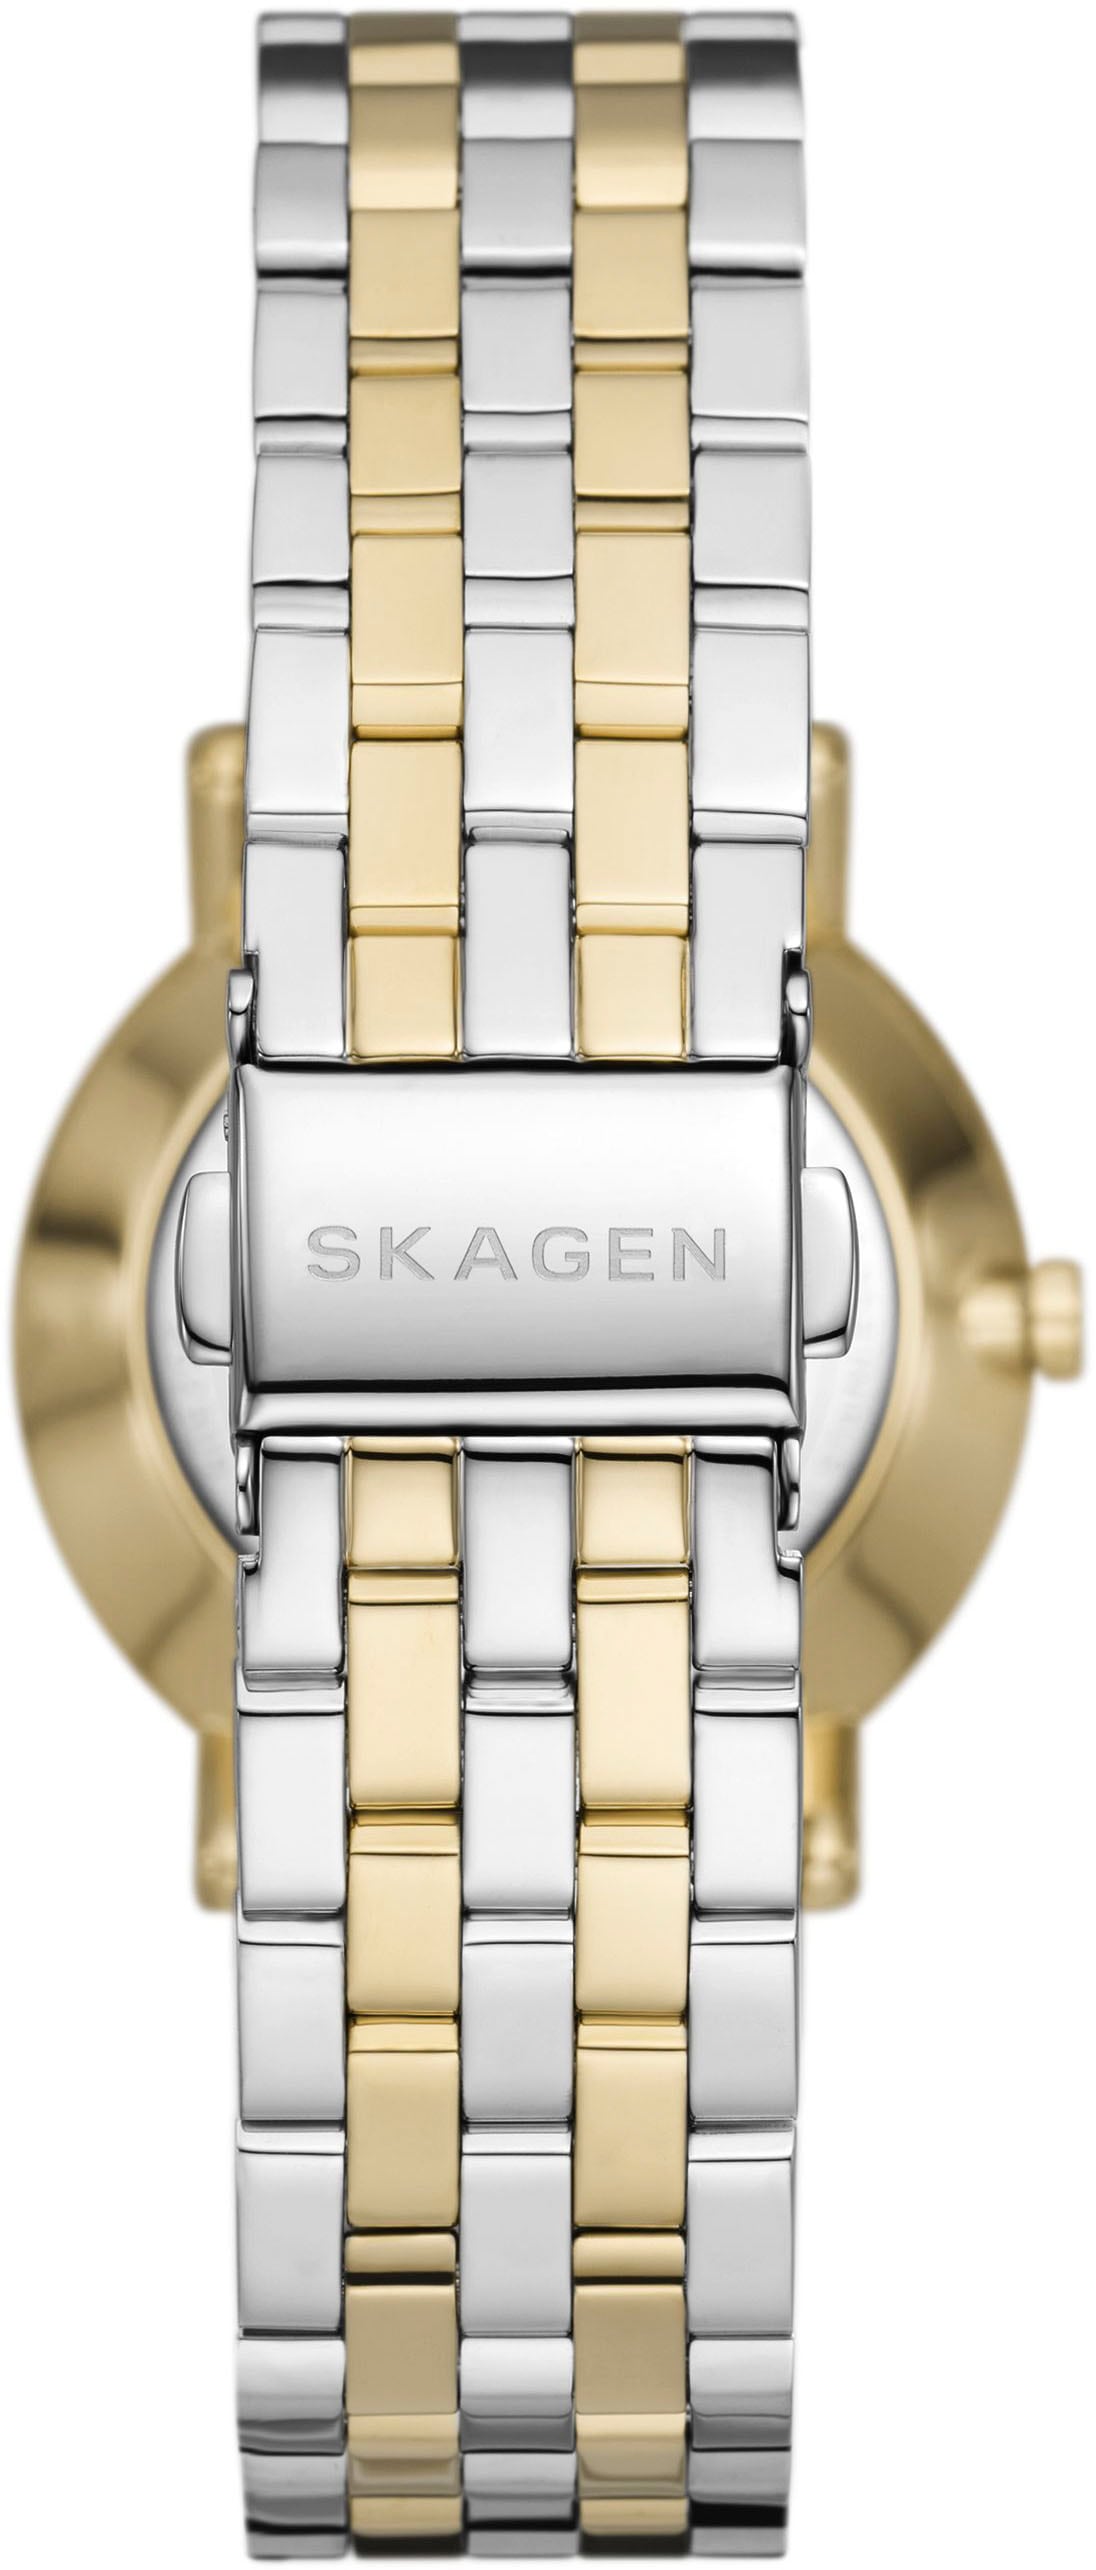 Skagen Quarzuhr »KUPPEL LILLE, SKW3122«, Armbanduhr, Damenuhr, analog